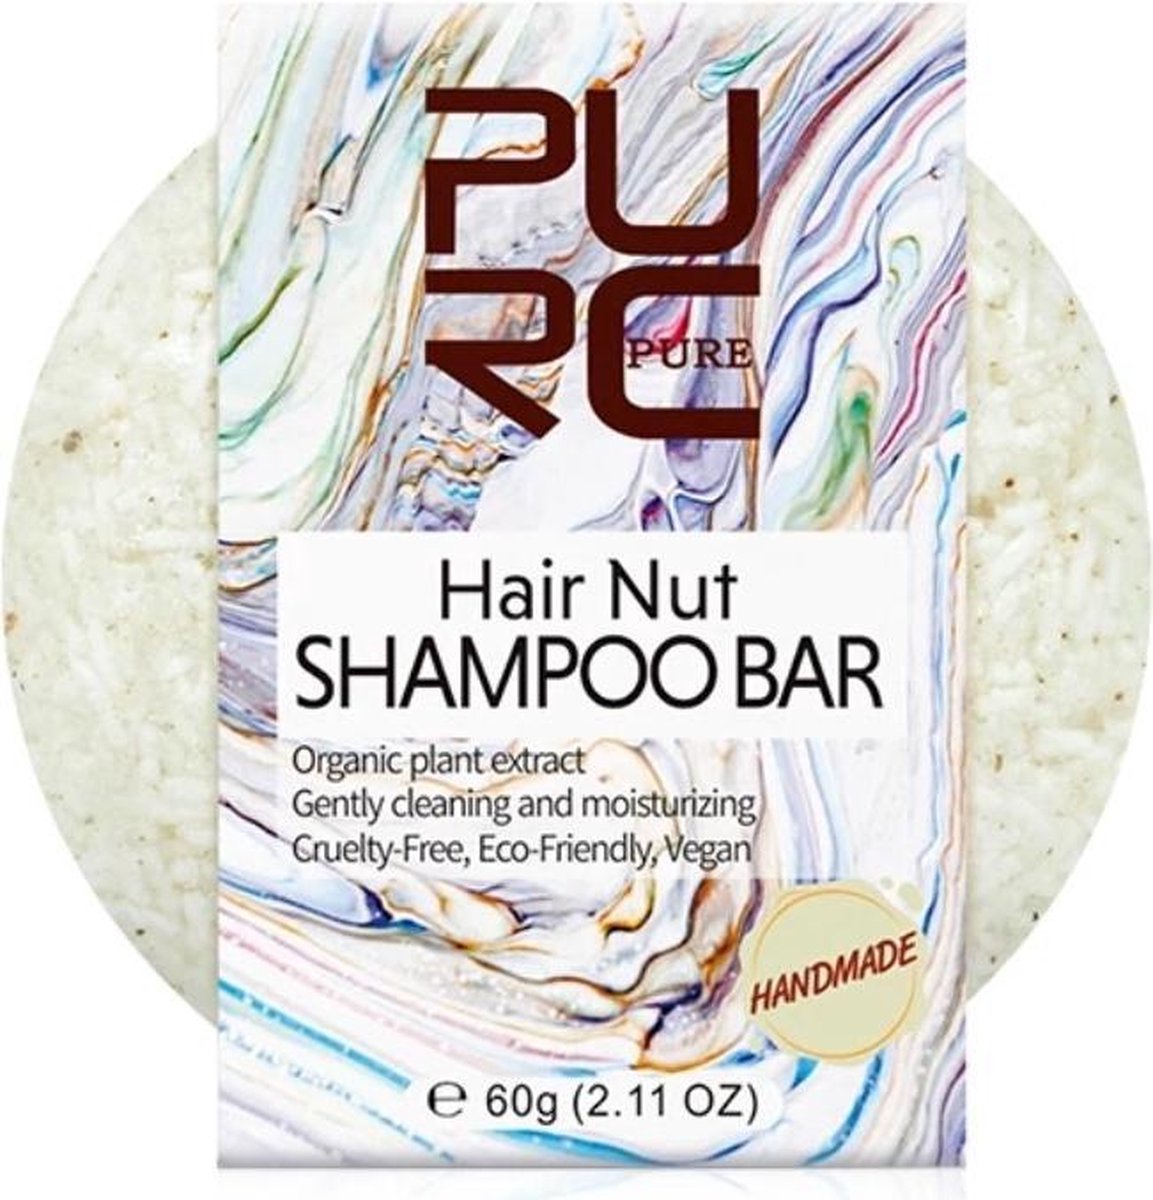 Handmade shampoo bar - Hair nut